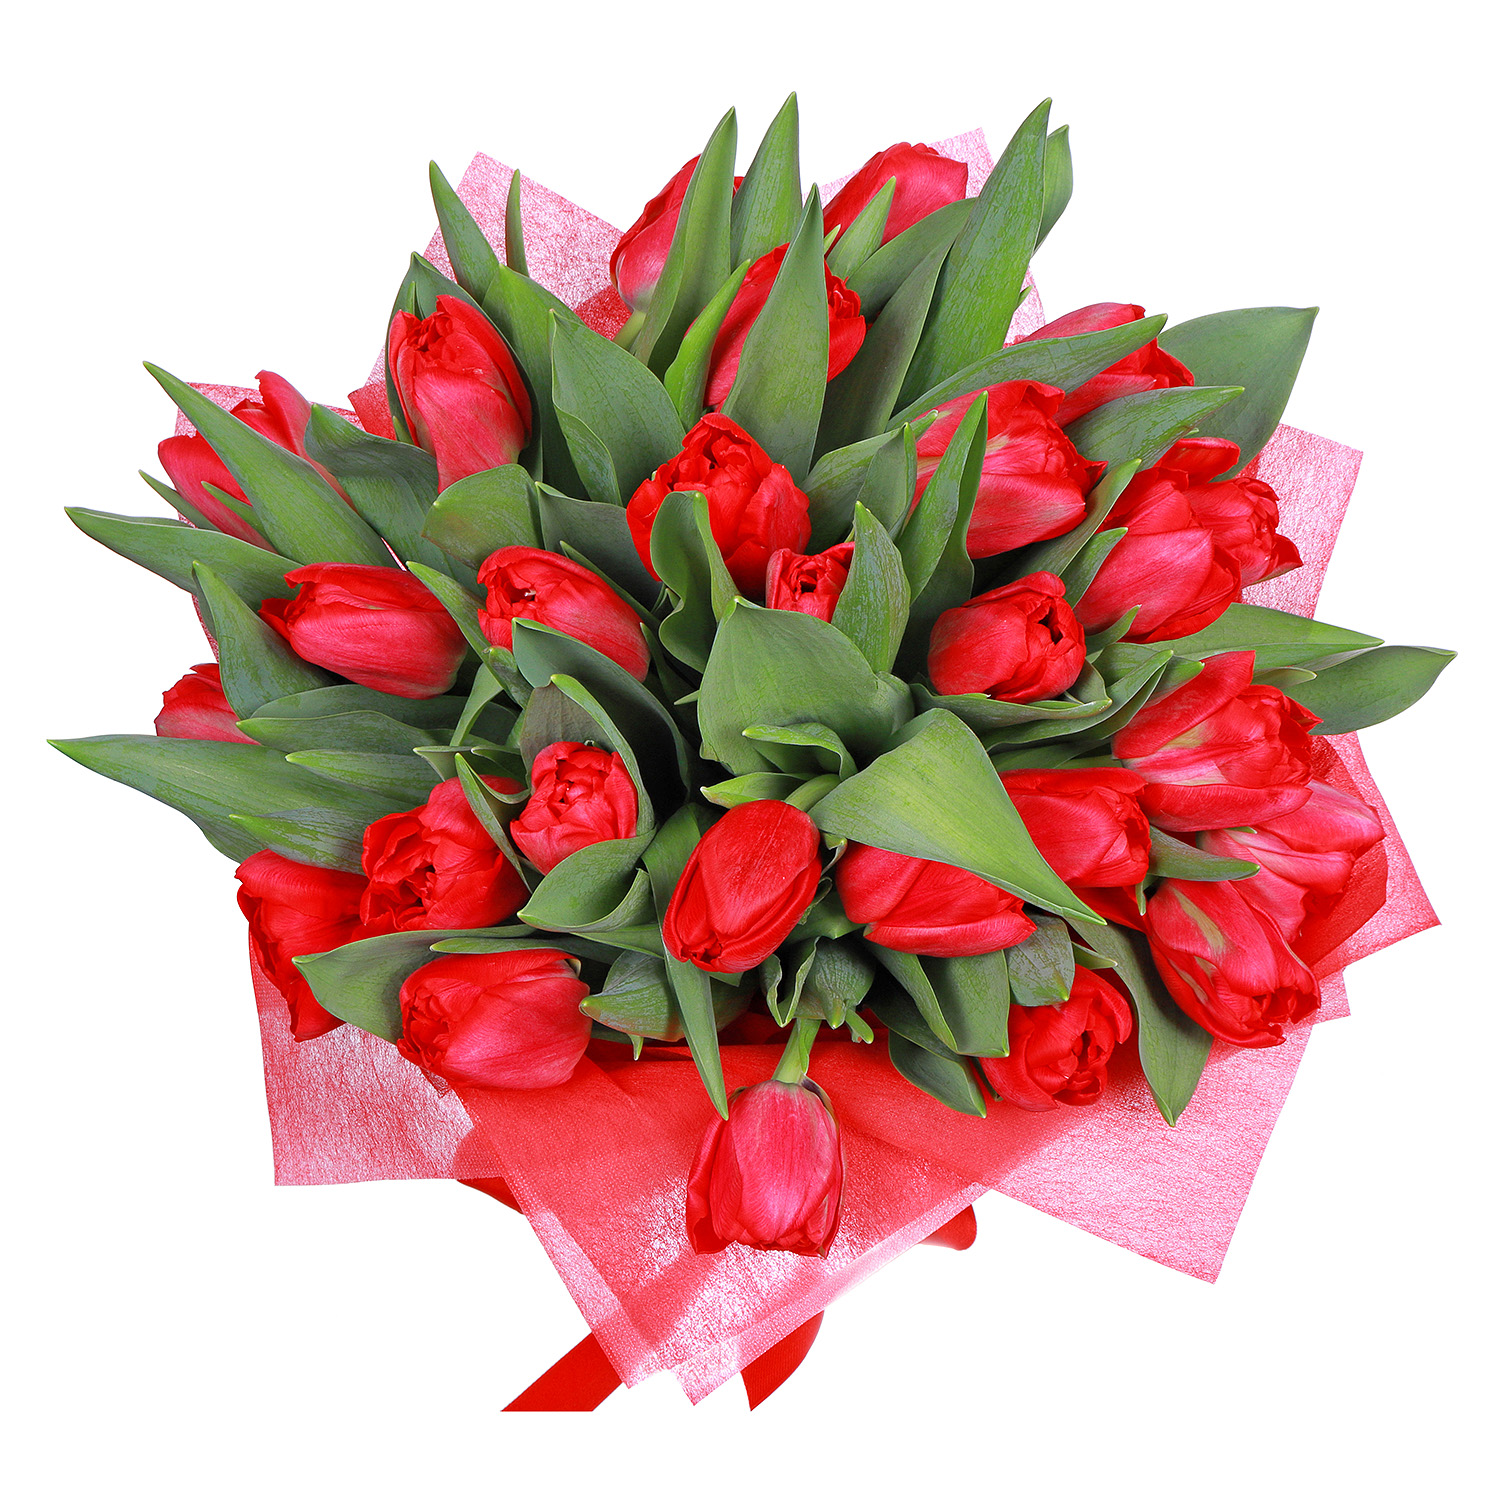 Недорогой букет с красными тюльпанами. Дешевые тюльпаны. Тюльпаны на заказ. Как выглядят дешёвые тюльпаны.